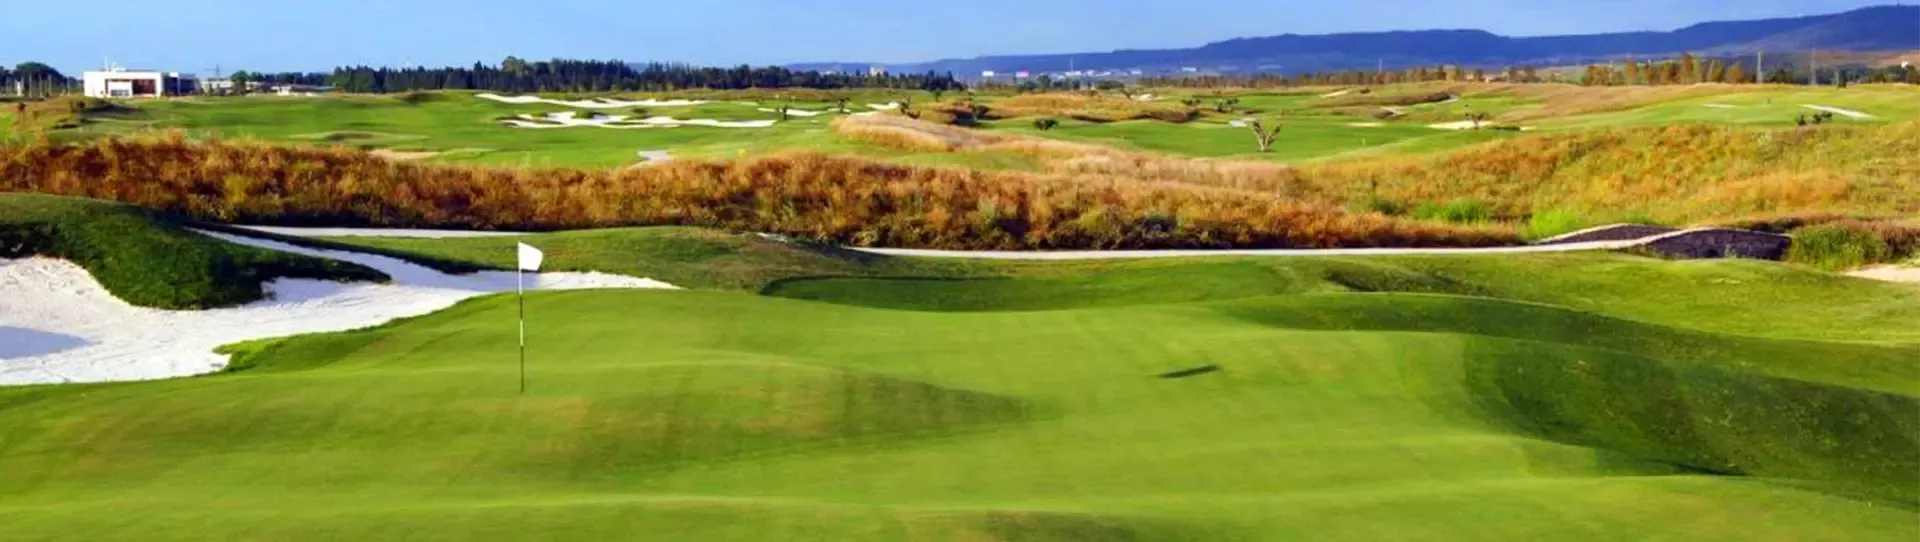 Spain golf courses - El Encin Golf Course - Photo 1